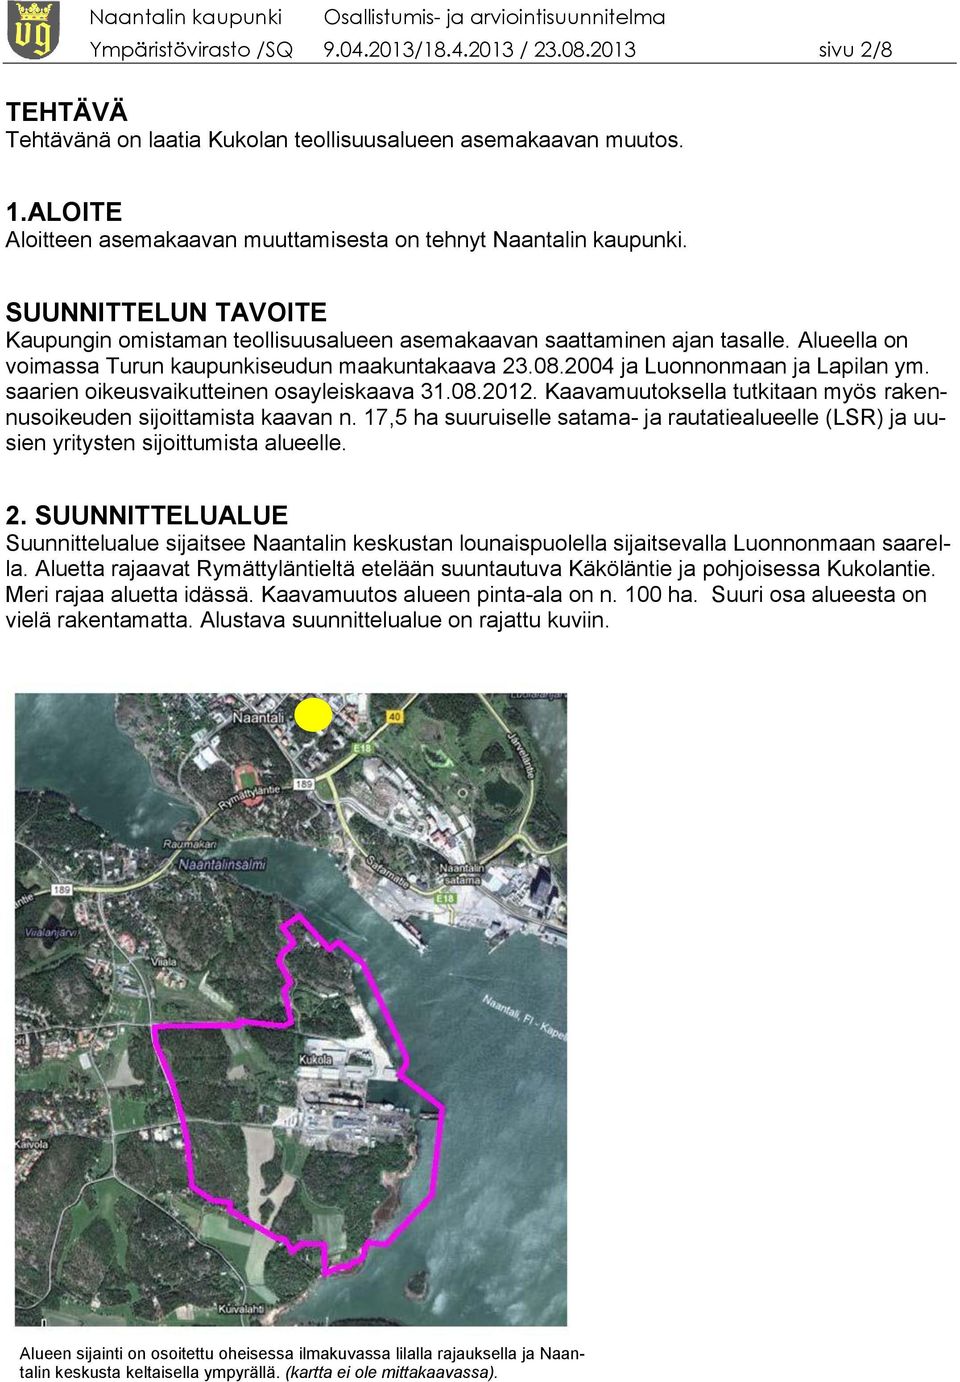 Alueella on voimassa Turun kaupunkiseudun maakuntakaava 23.08.2004 ja Luonnonmaan ja Lapilan ym. saarien oikeusvaikutteinen osayleiskaava 31.08.2012.